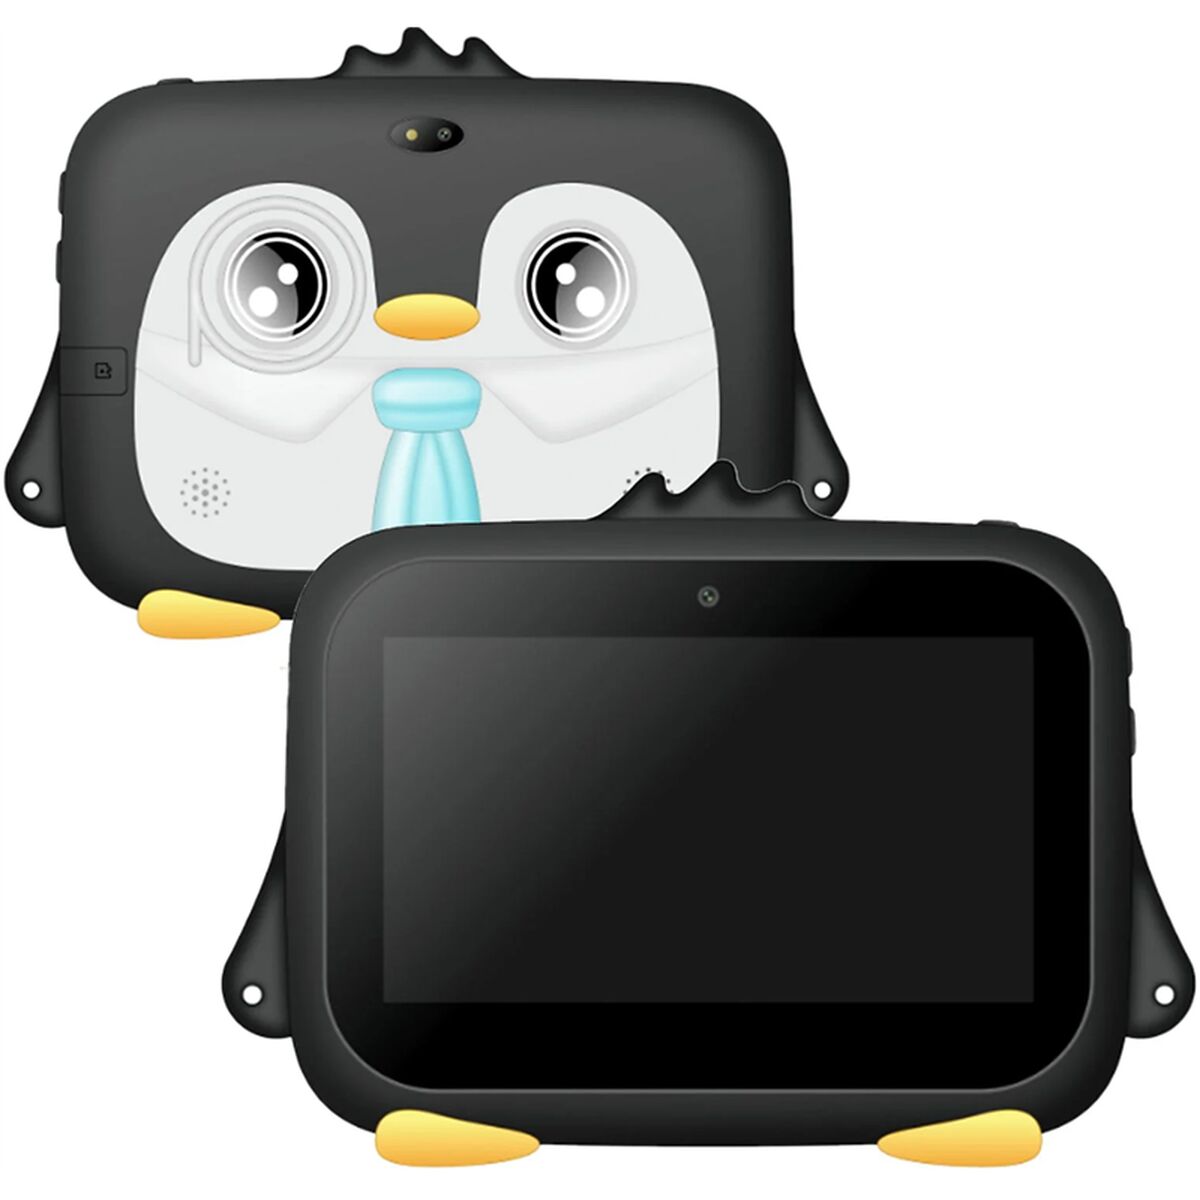 Interaktiv Tablet til Børn K716 Sort 1 GB RAM 8 GB 7"